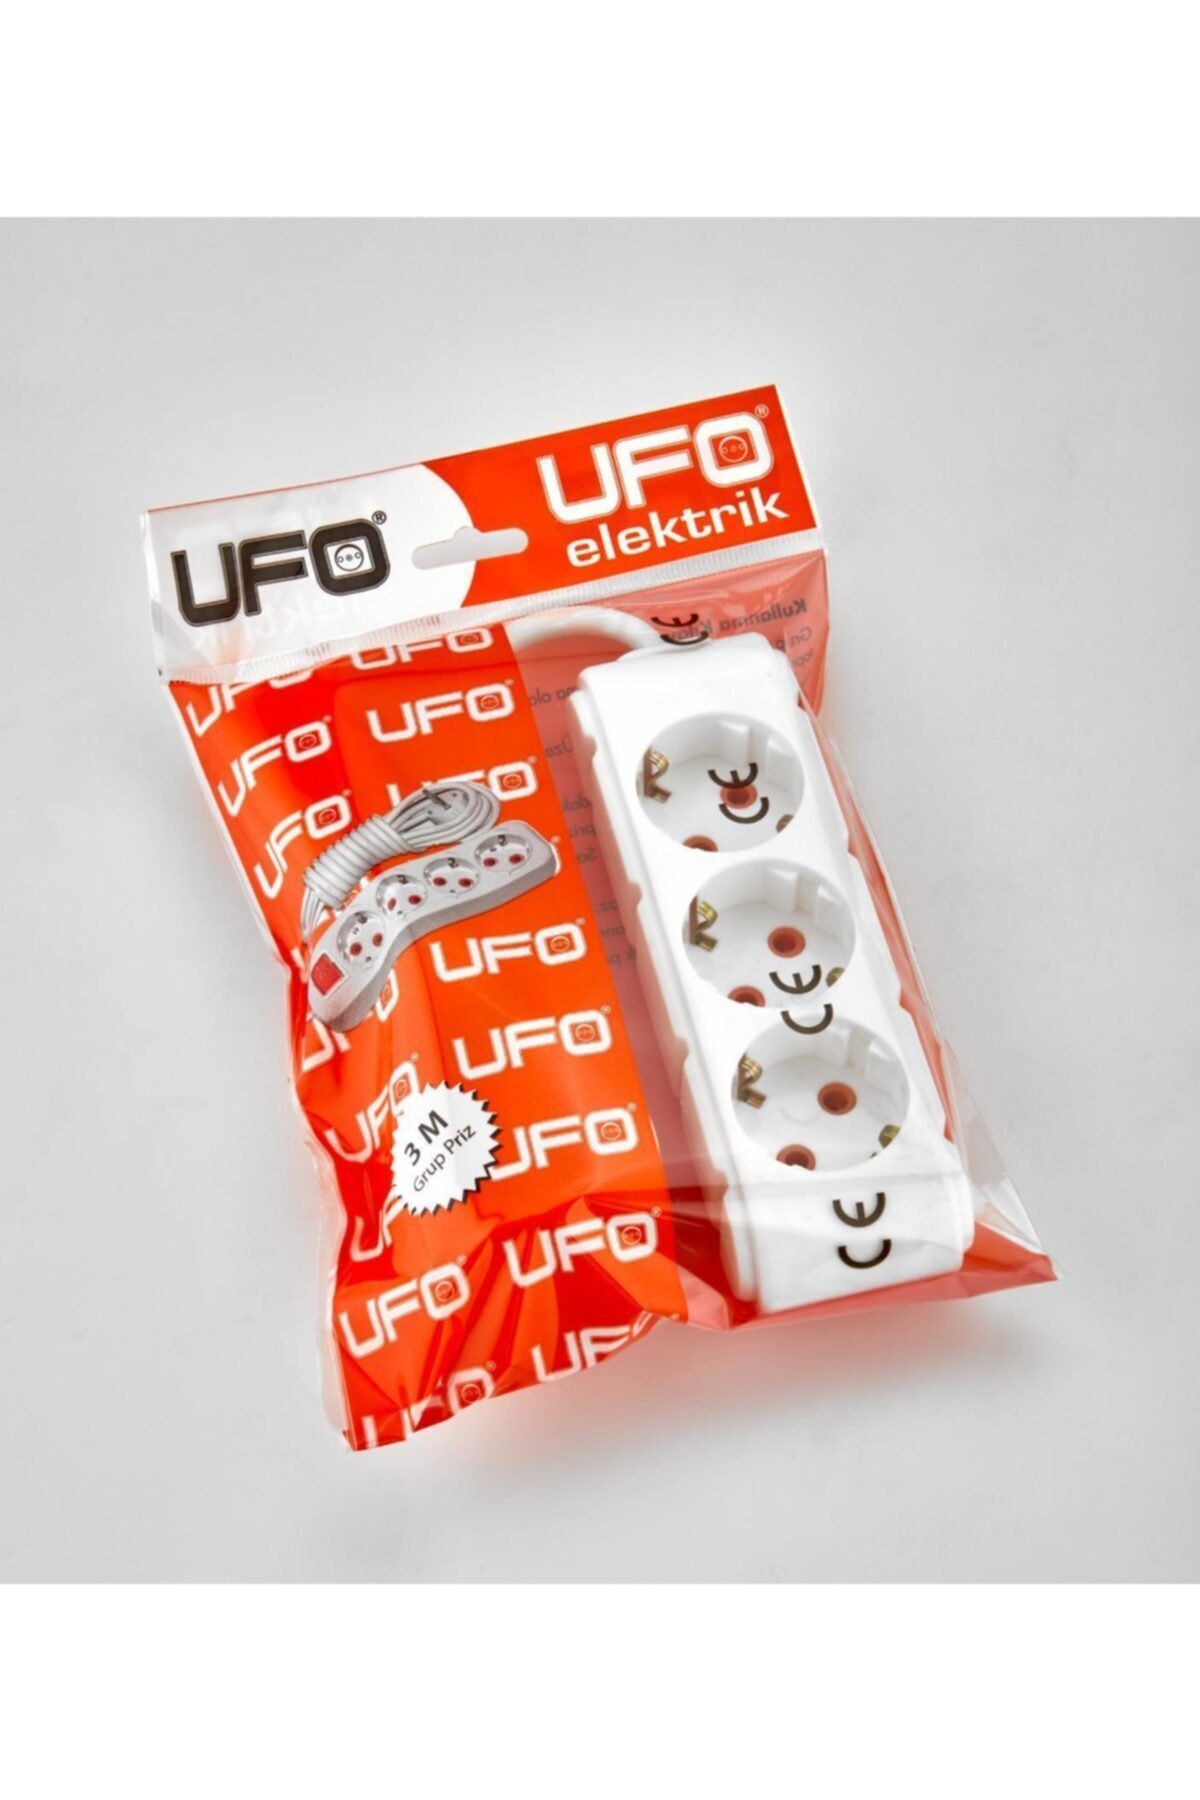 UFO Elektrik Beyaz Renkli Üçlü Topraklı Kablolu Topraklı Priz 3 Metre